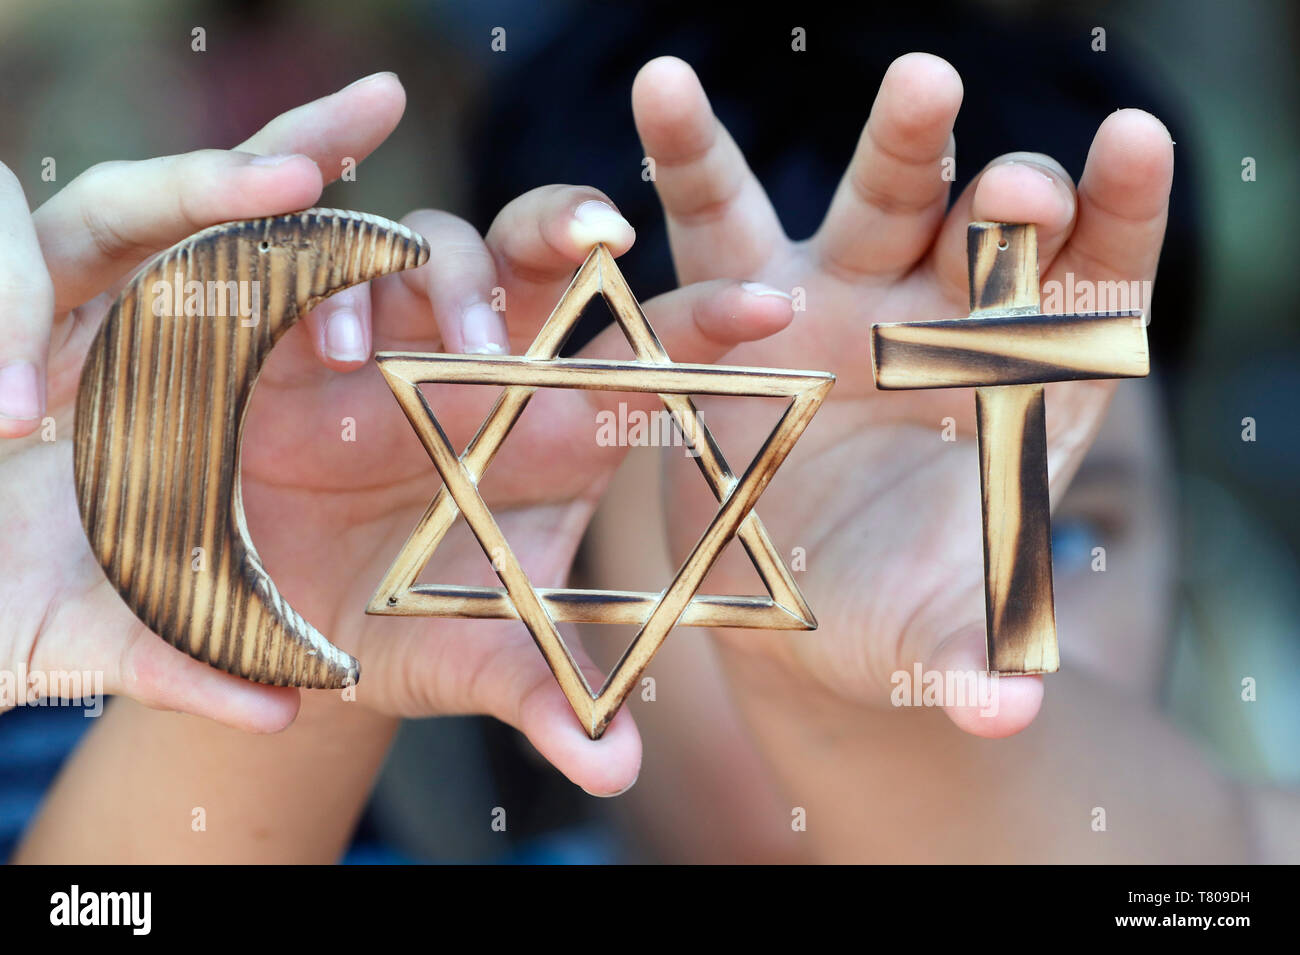 Christentum, Islam, Judentum, die drei monotheistischen Religionen mit Symbolen der jüdischen, muslimischen und christlichen Kreuz, Vietnam Stockfoto